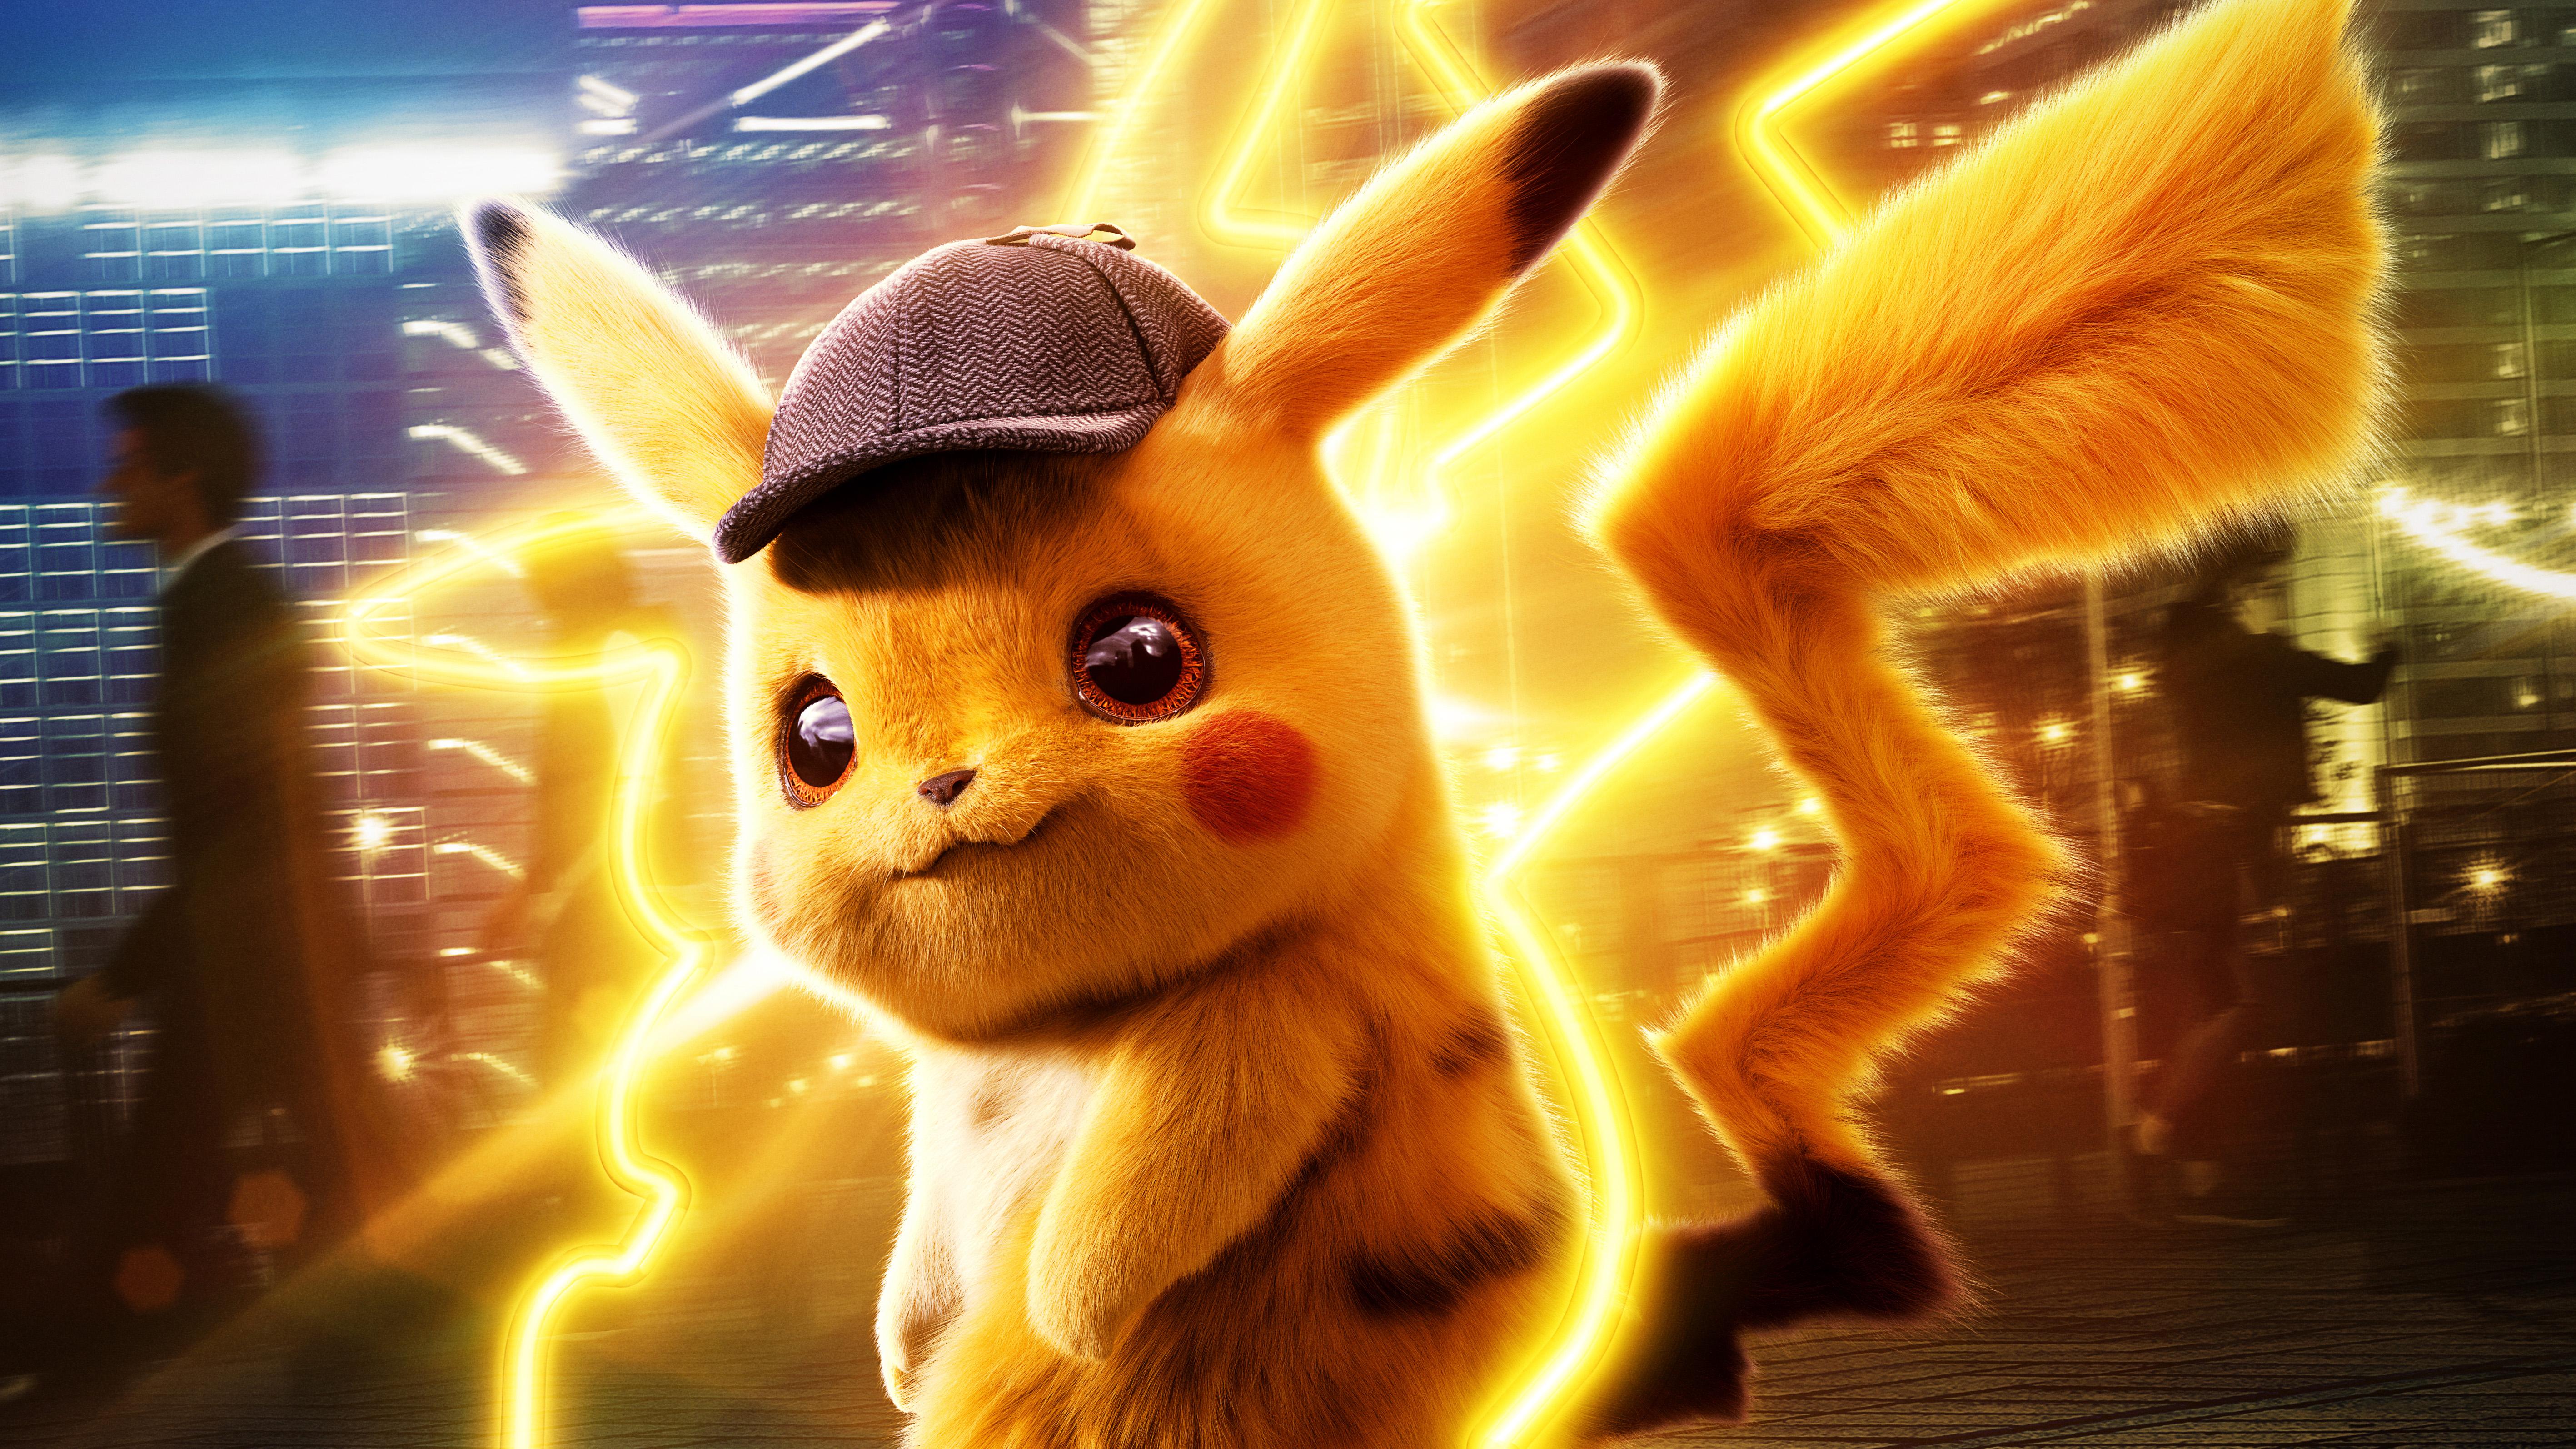 Pokemon Detective Pikachu 5k, HD Movies, 4k Wallpaper, Image